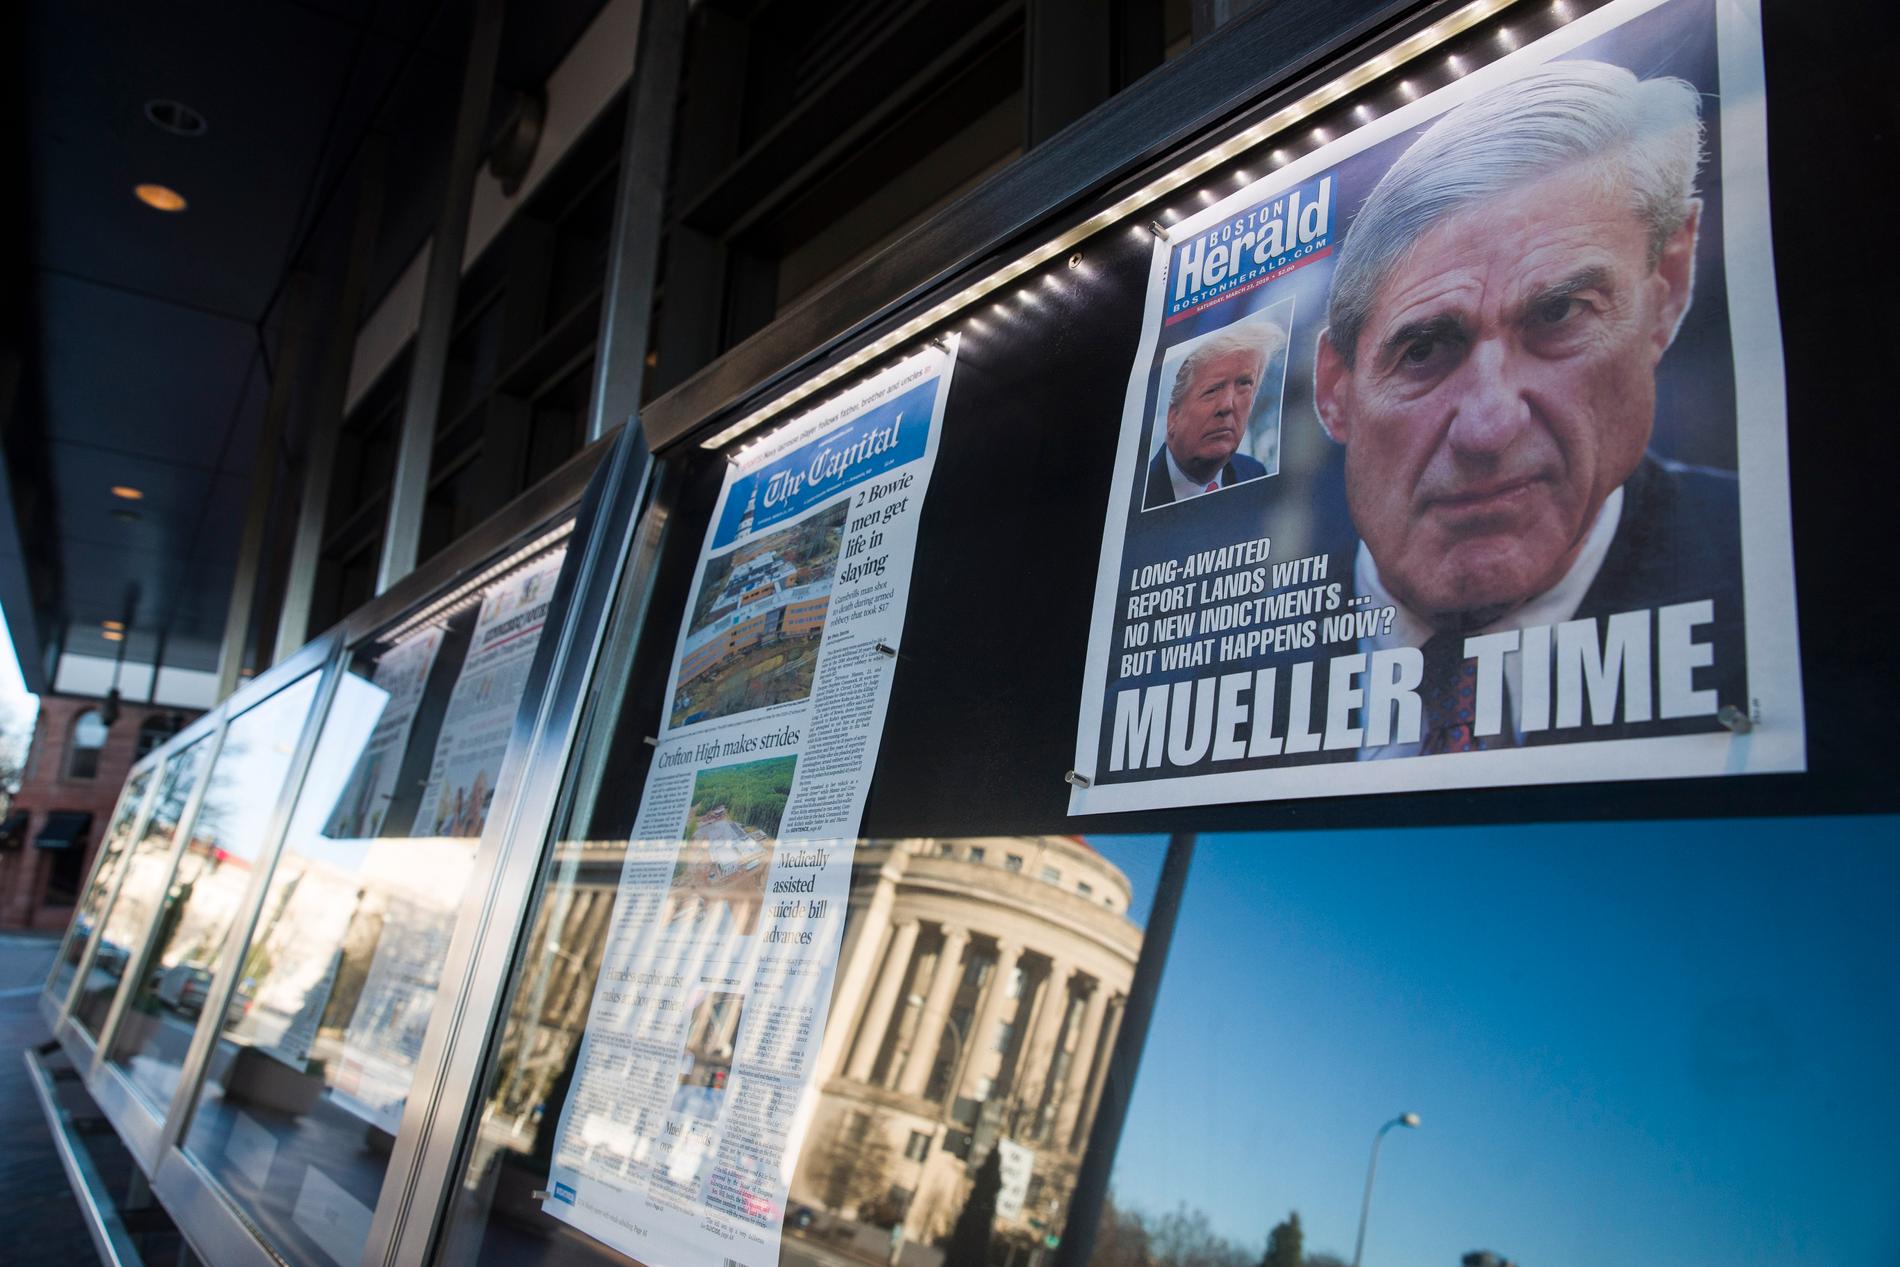 "Mueller time" – amerikanska medier väntade på resultatet med spänning.